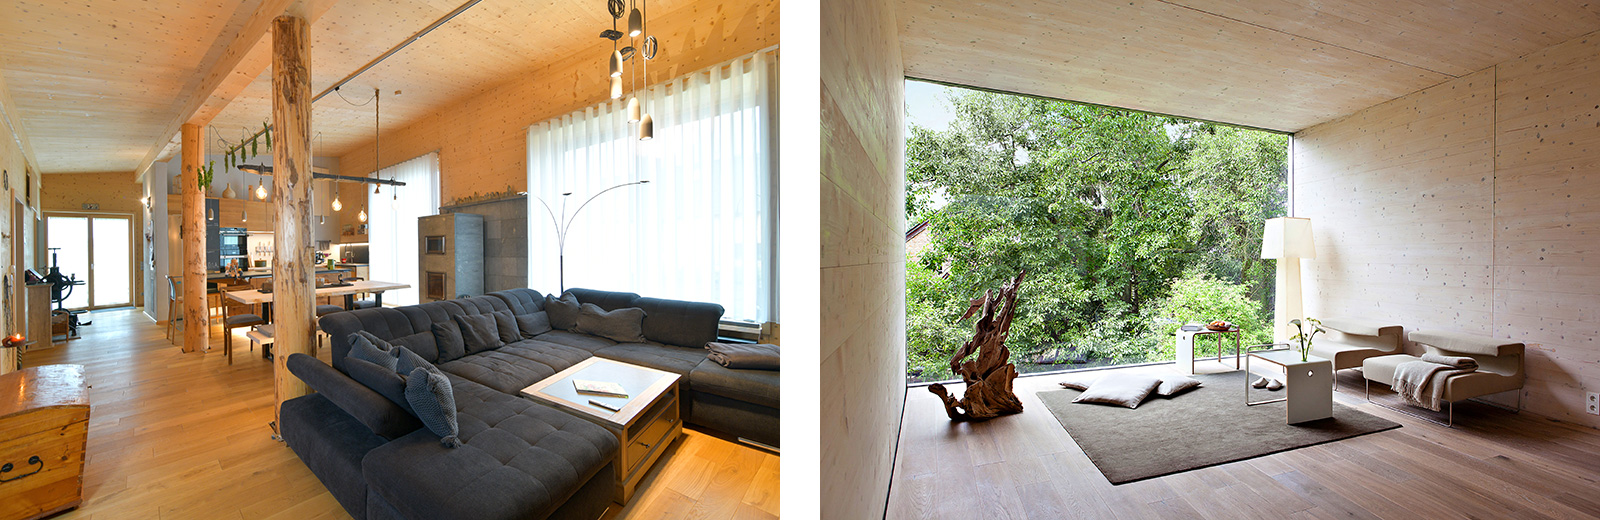 Wohnen mit Holz – von gemütlich bis minimalistisch